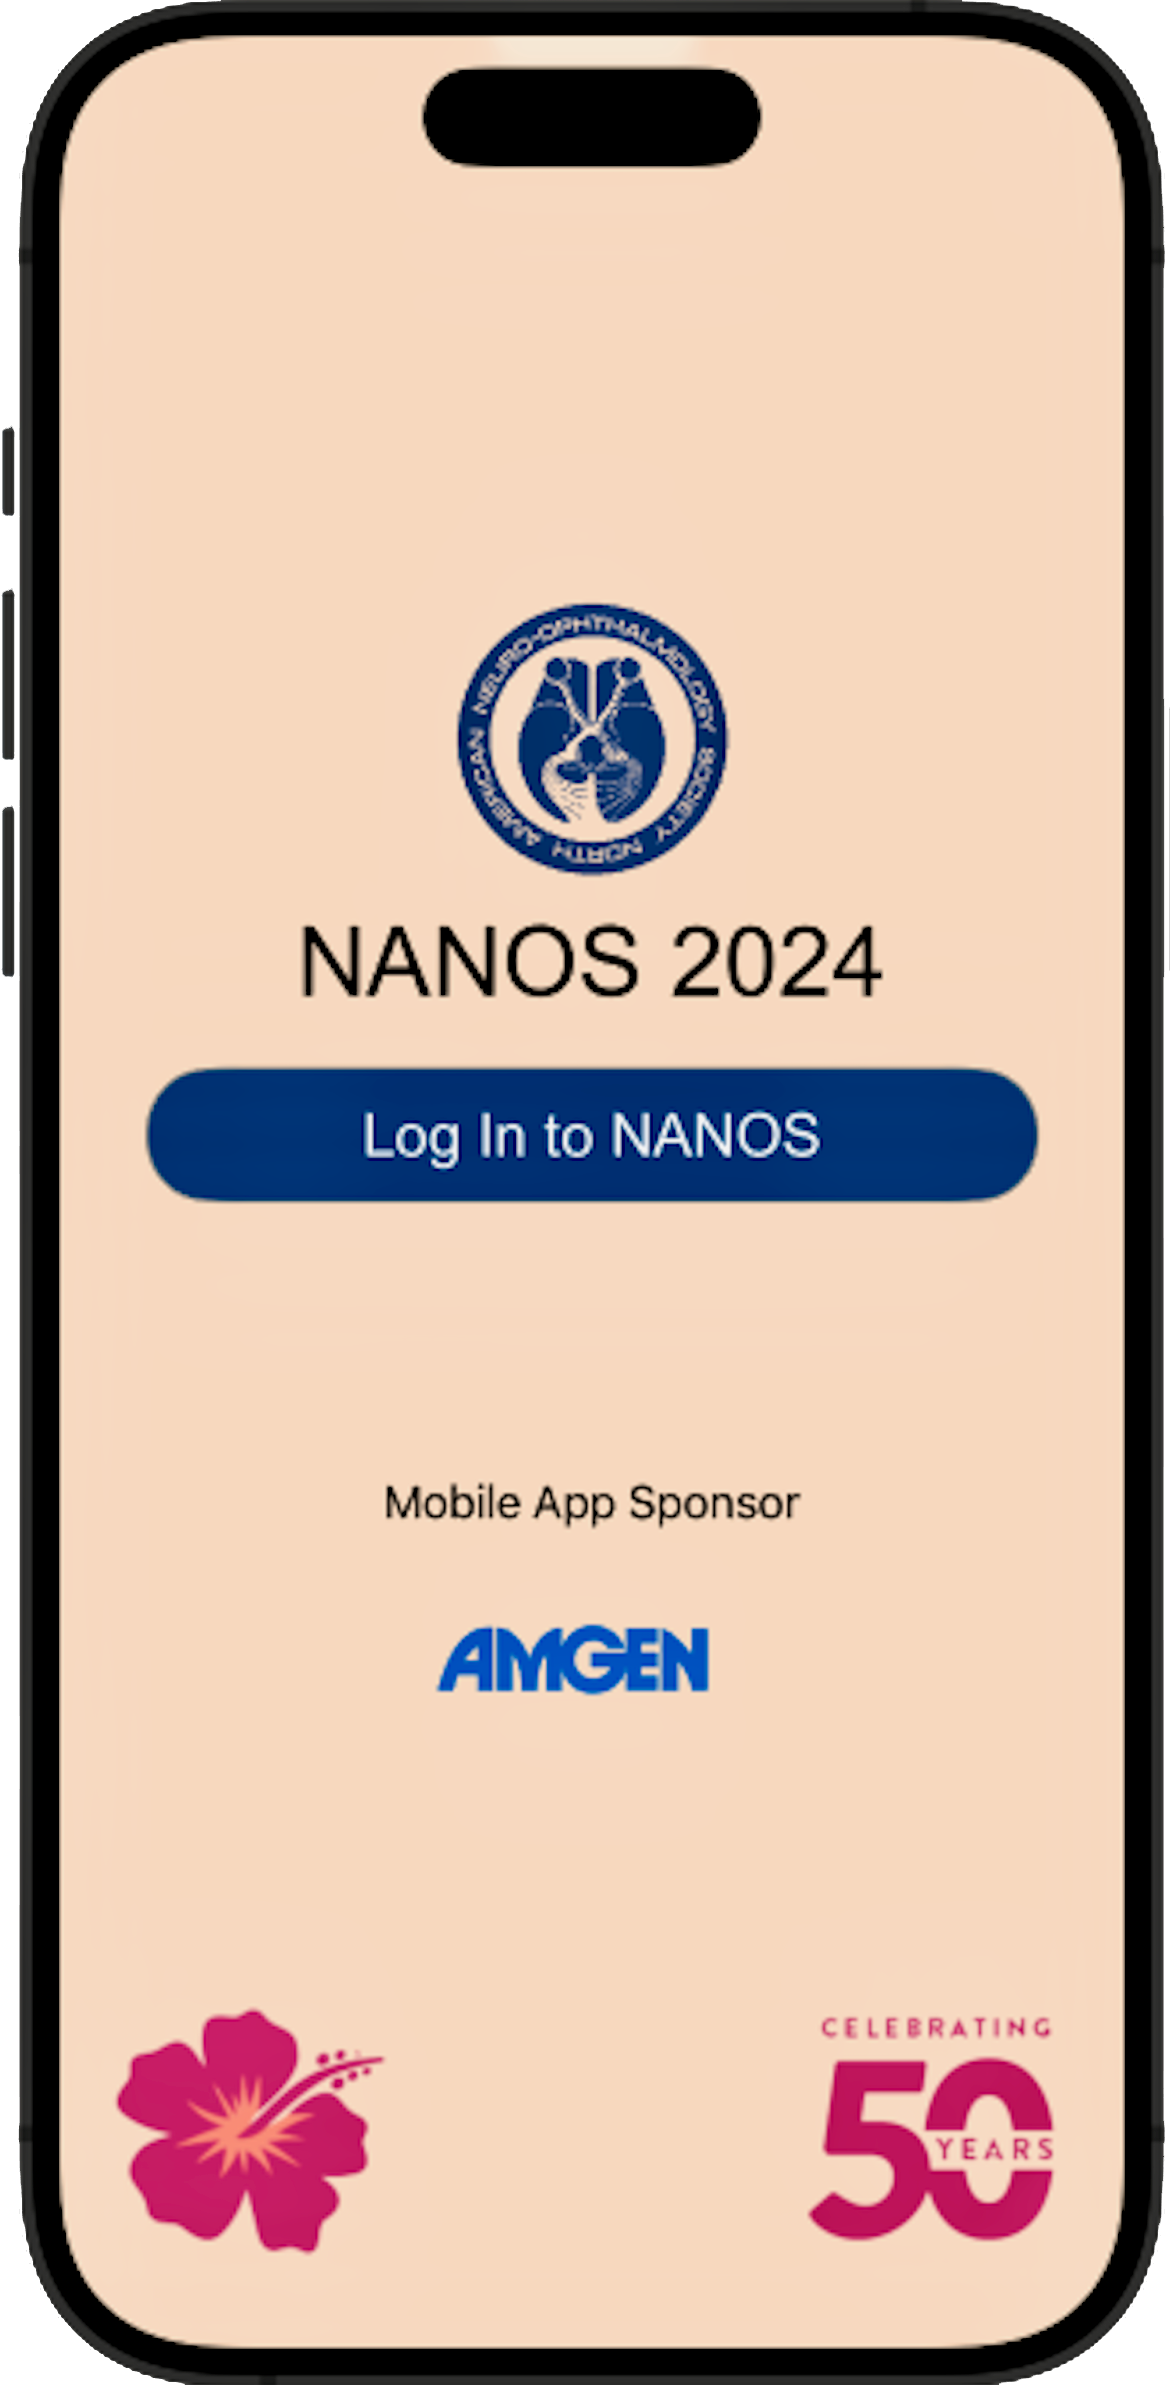 nanos 2024 app